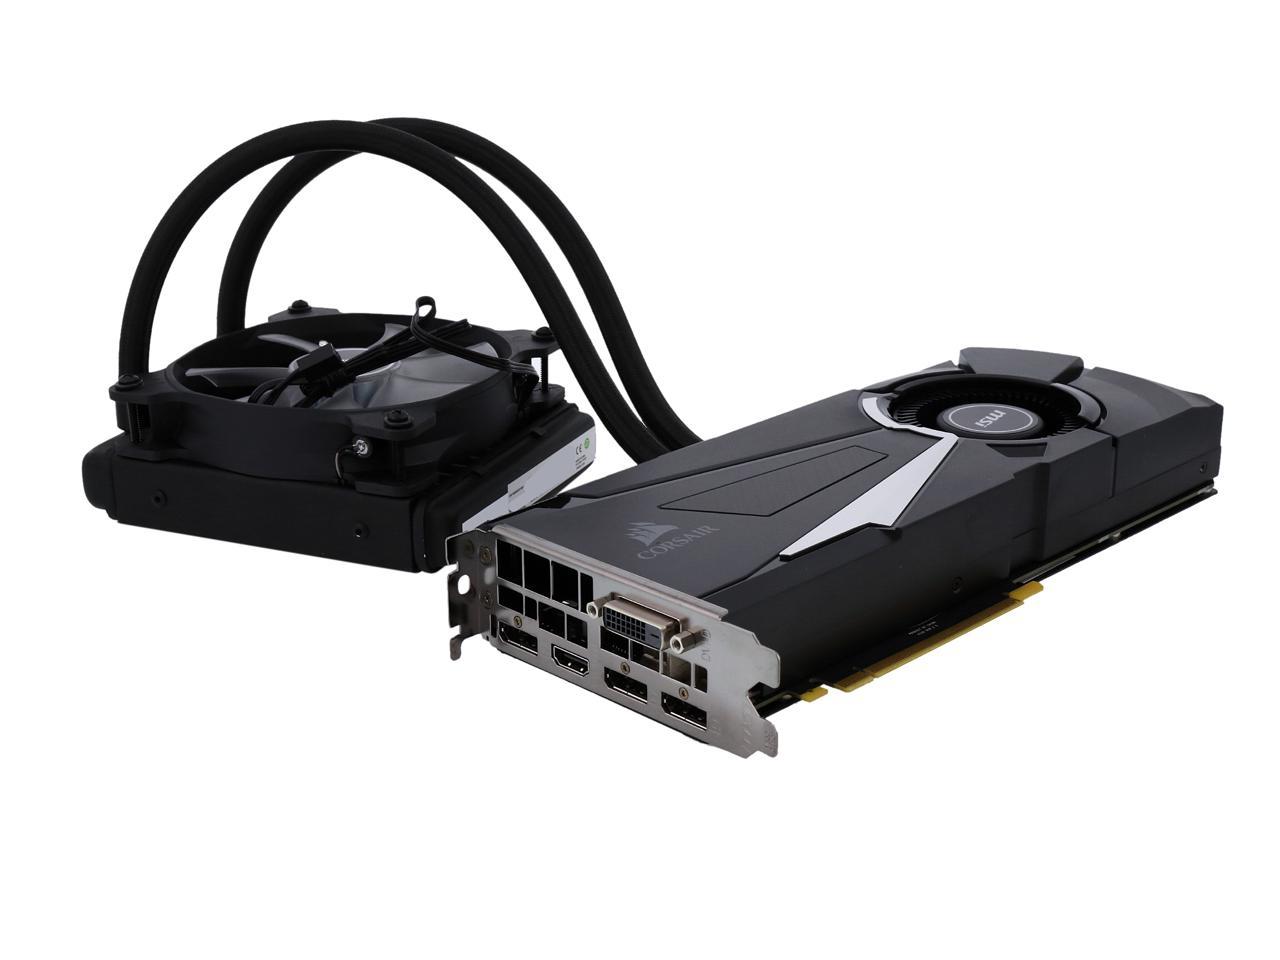 MSI GeForce GTX 1080 8GB GDDR5X PCI Express 3.0 x16 SLI Support ATX Video  Card GeForce GTX 1080 SEA HAWK